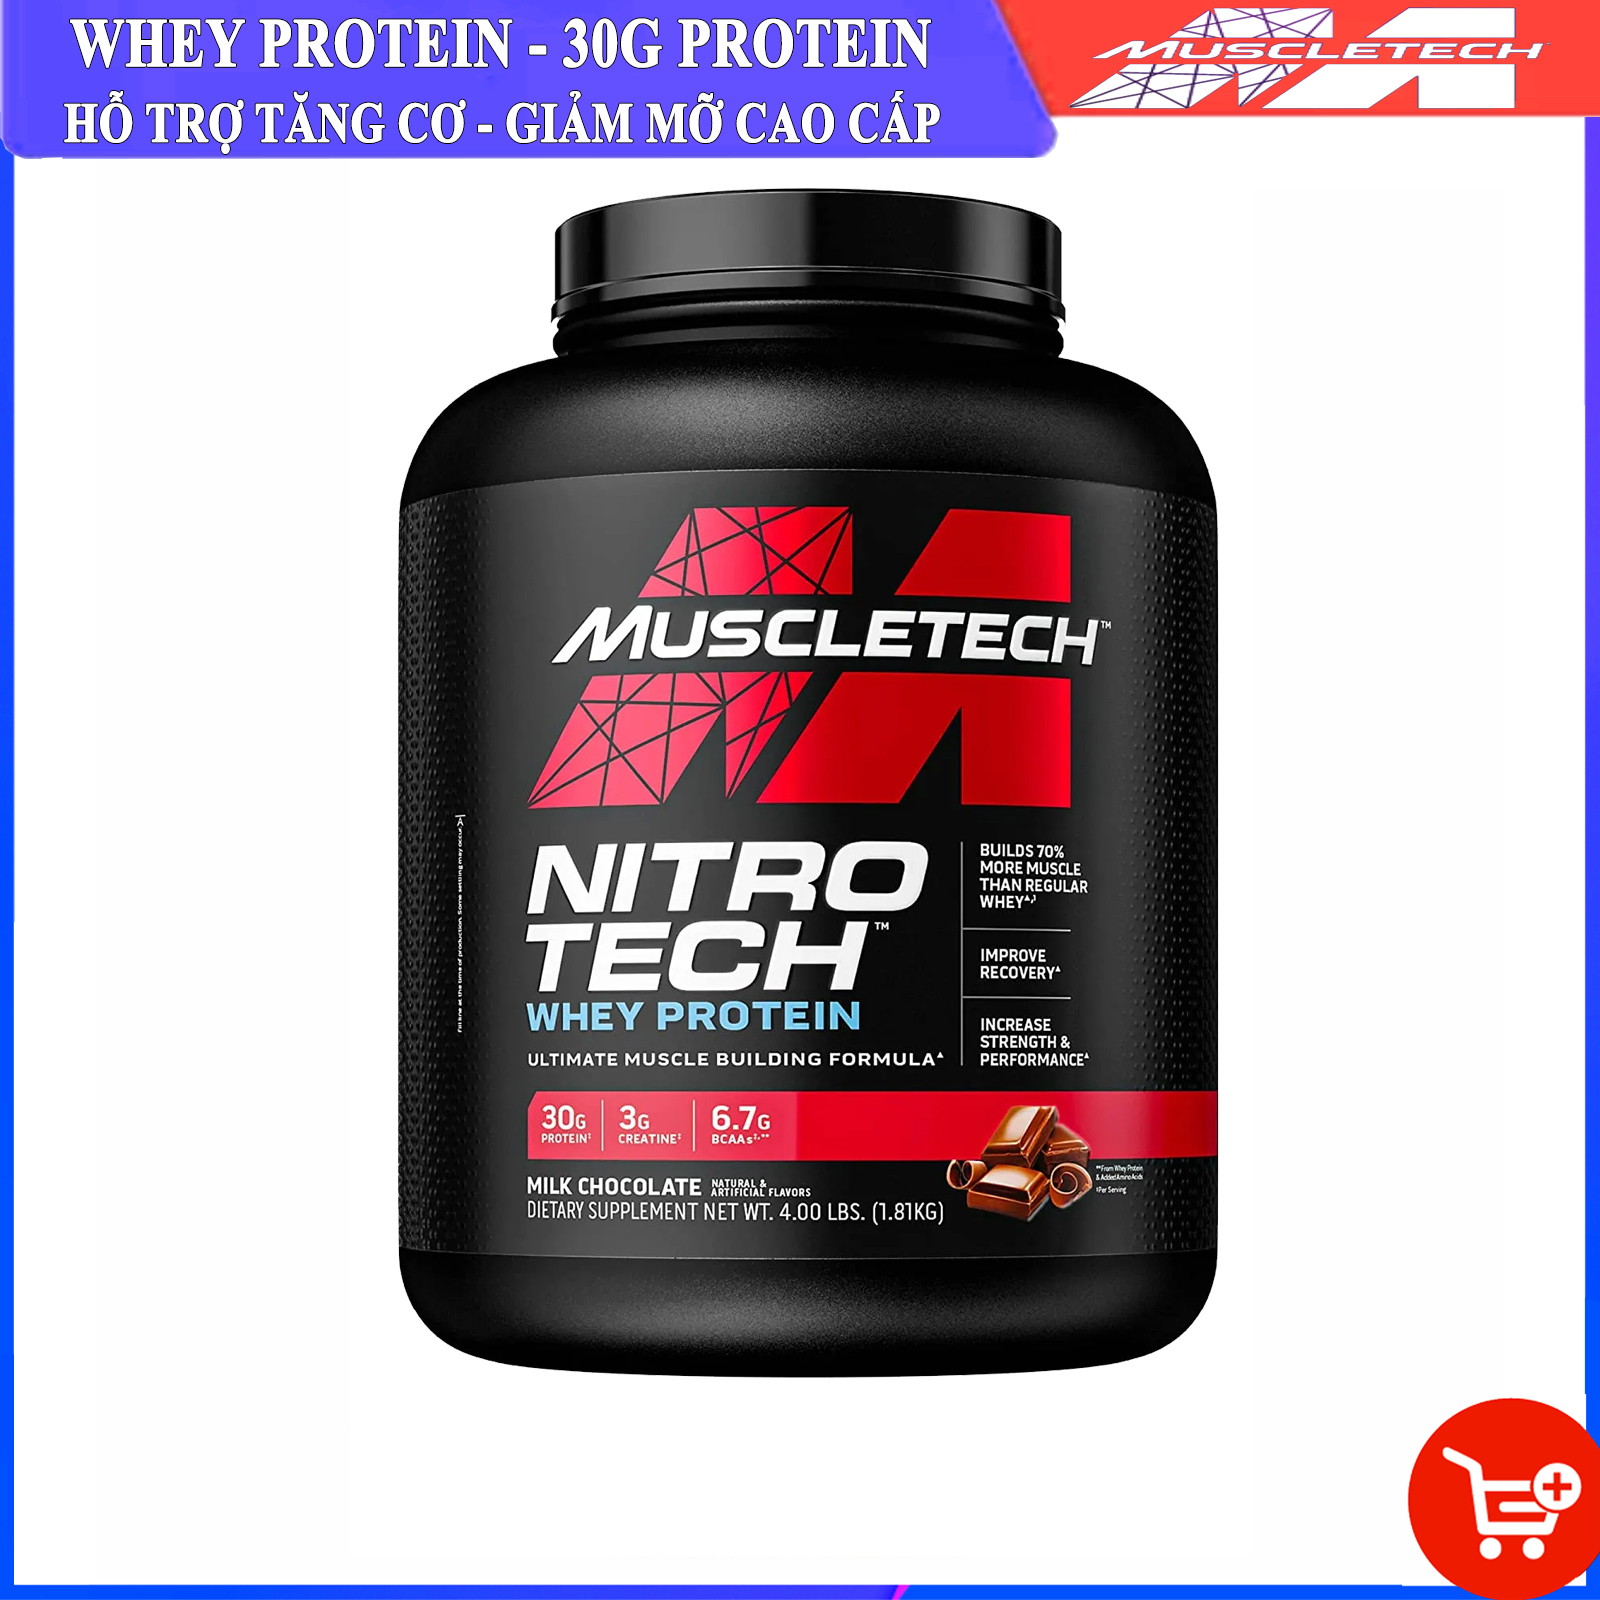 Sữa tăng cơ cao cấp Whey Protein Nitro Tech của MuscleTech hộp 1.8kg hỗ